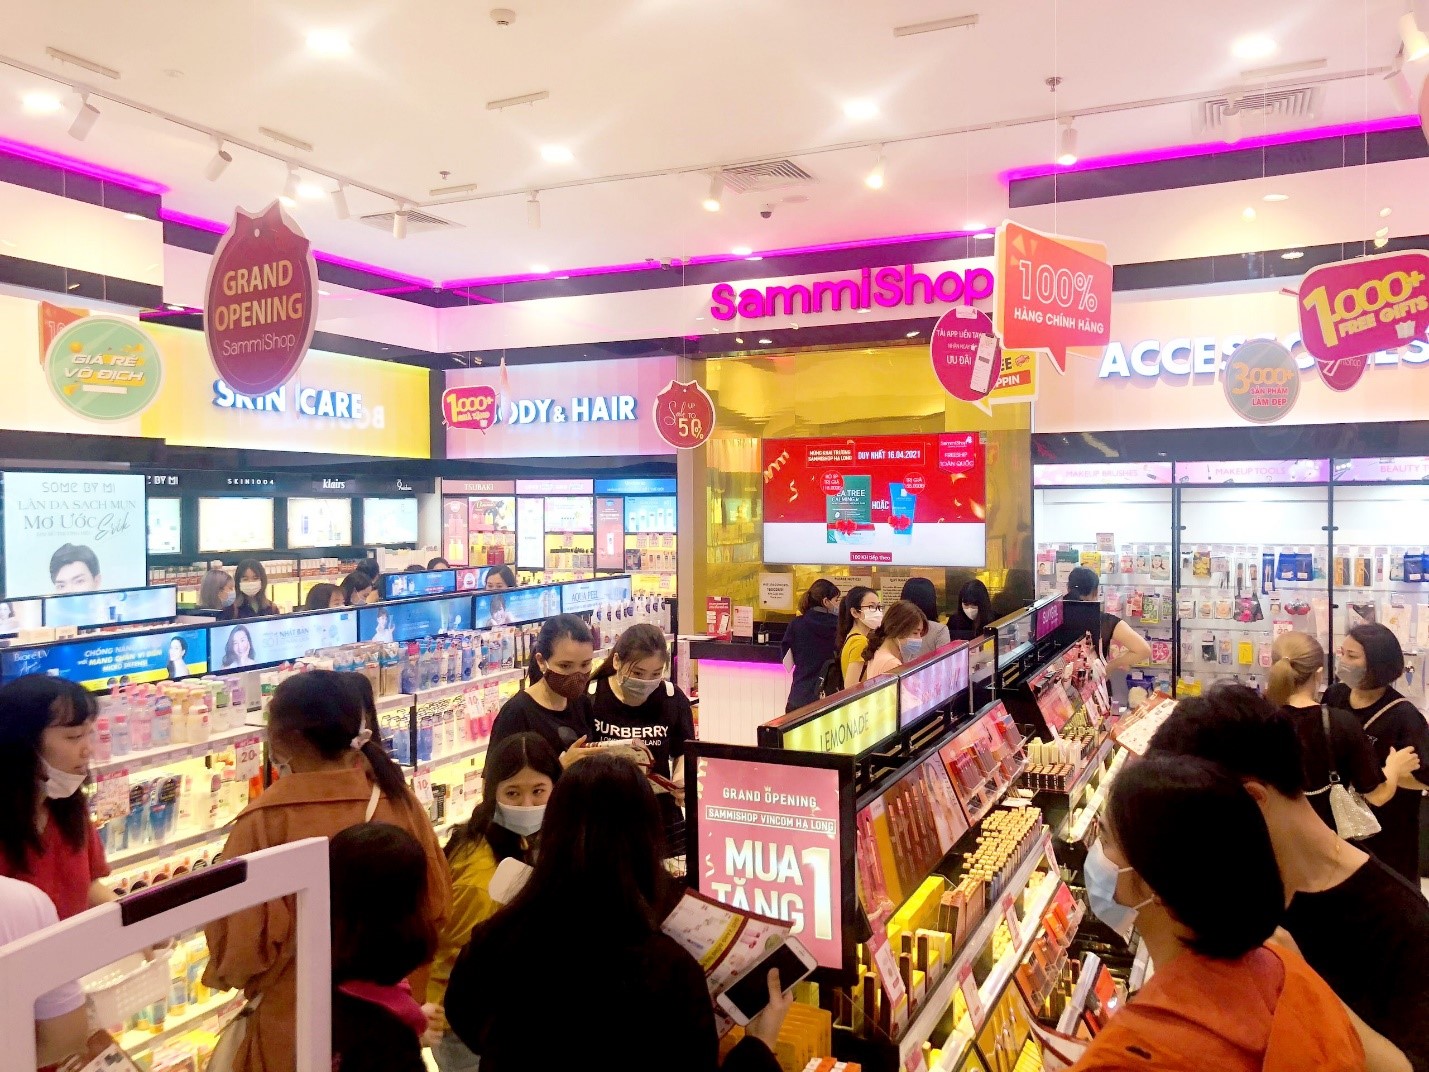 Siêu thị mỹ phẩm hàng đầu Việt Nam đồng loạt khai trương 2 chi nhánh mới tại trung tâm thương mại Vincom - ảnh 5